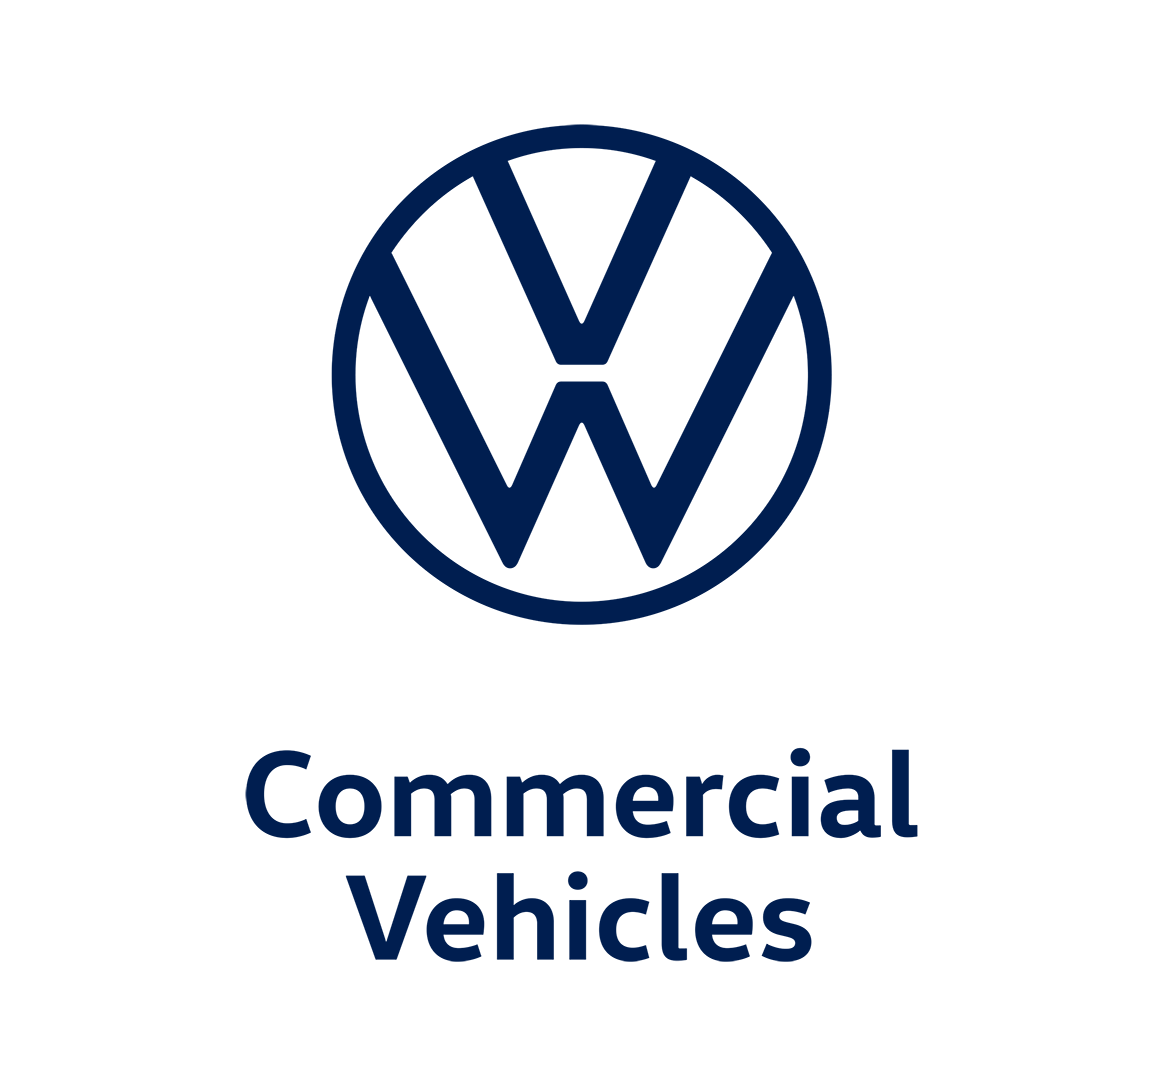 Volkswagen Commercial Vehicles logo